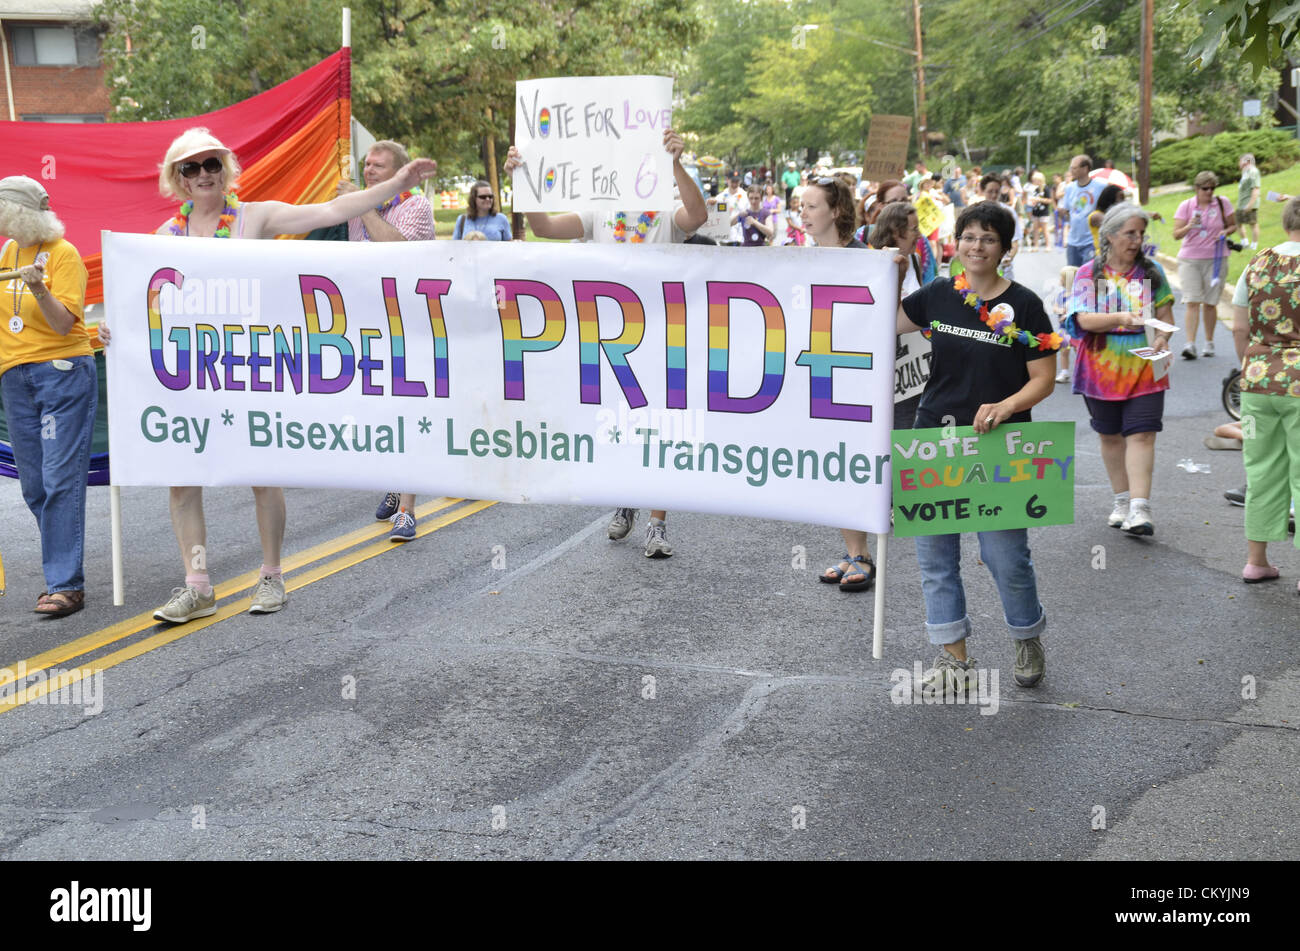 Septiembre 3, 2012, Greenbelt, Maryland USA Greenbelt Desfile del Día del Trabajo de la comunidad gay lésbico ingresó en Greenbelt el Desfile del Día del Trabajo Foto de stock